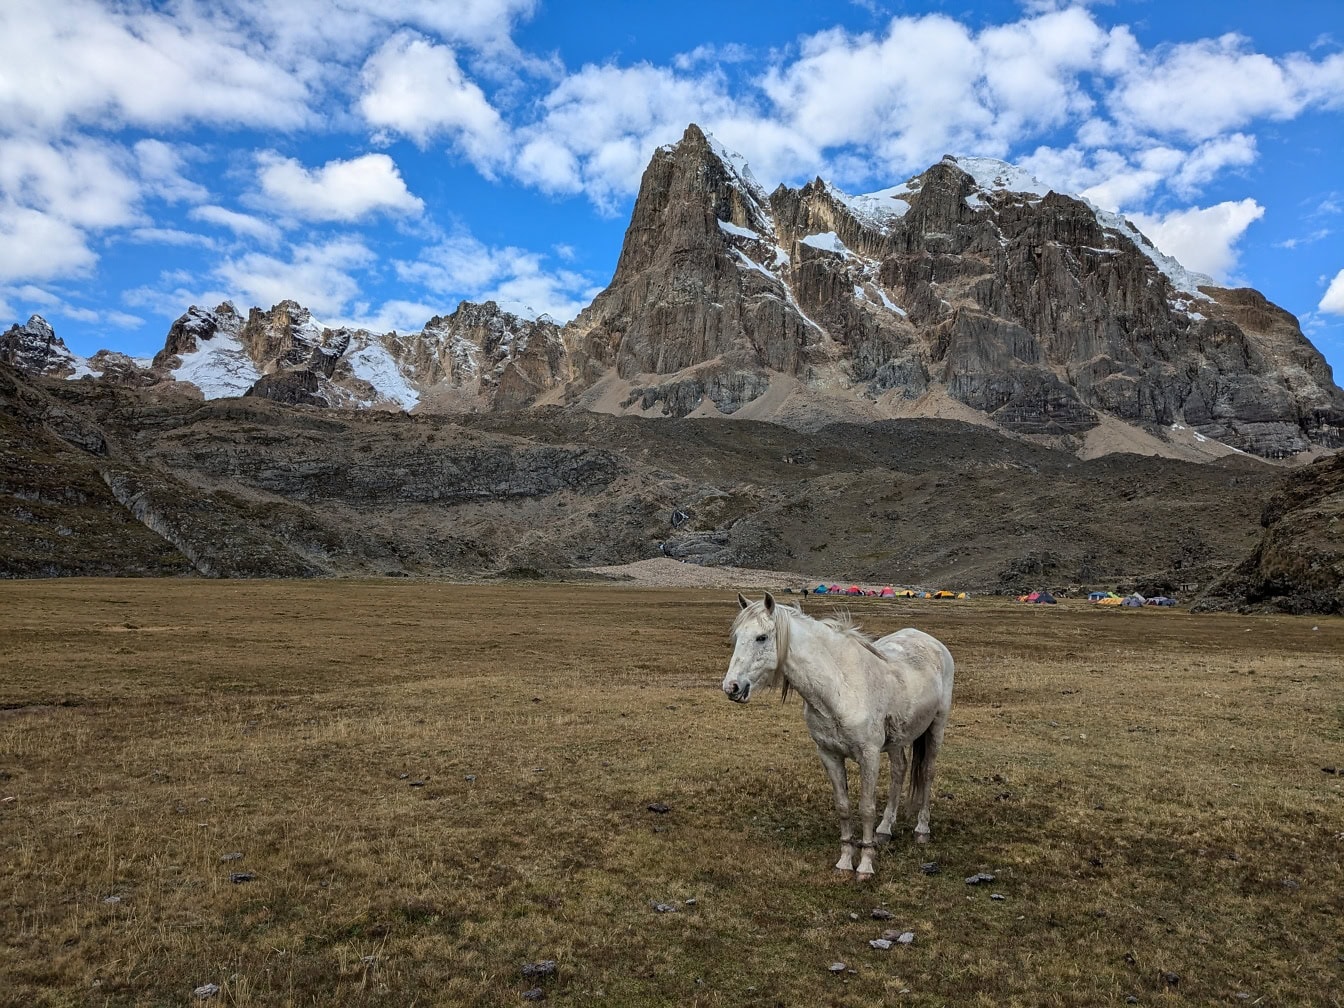 Bílý kůň stojící na poli s horami v pozadí v pohoří Cordillera Huayhuash v peruánských Andách